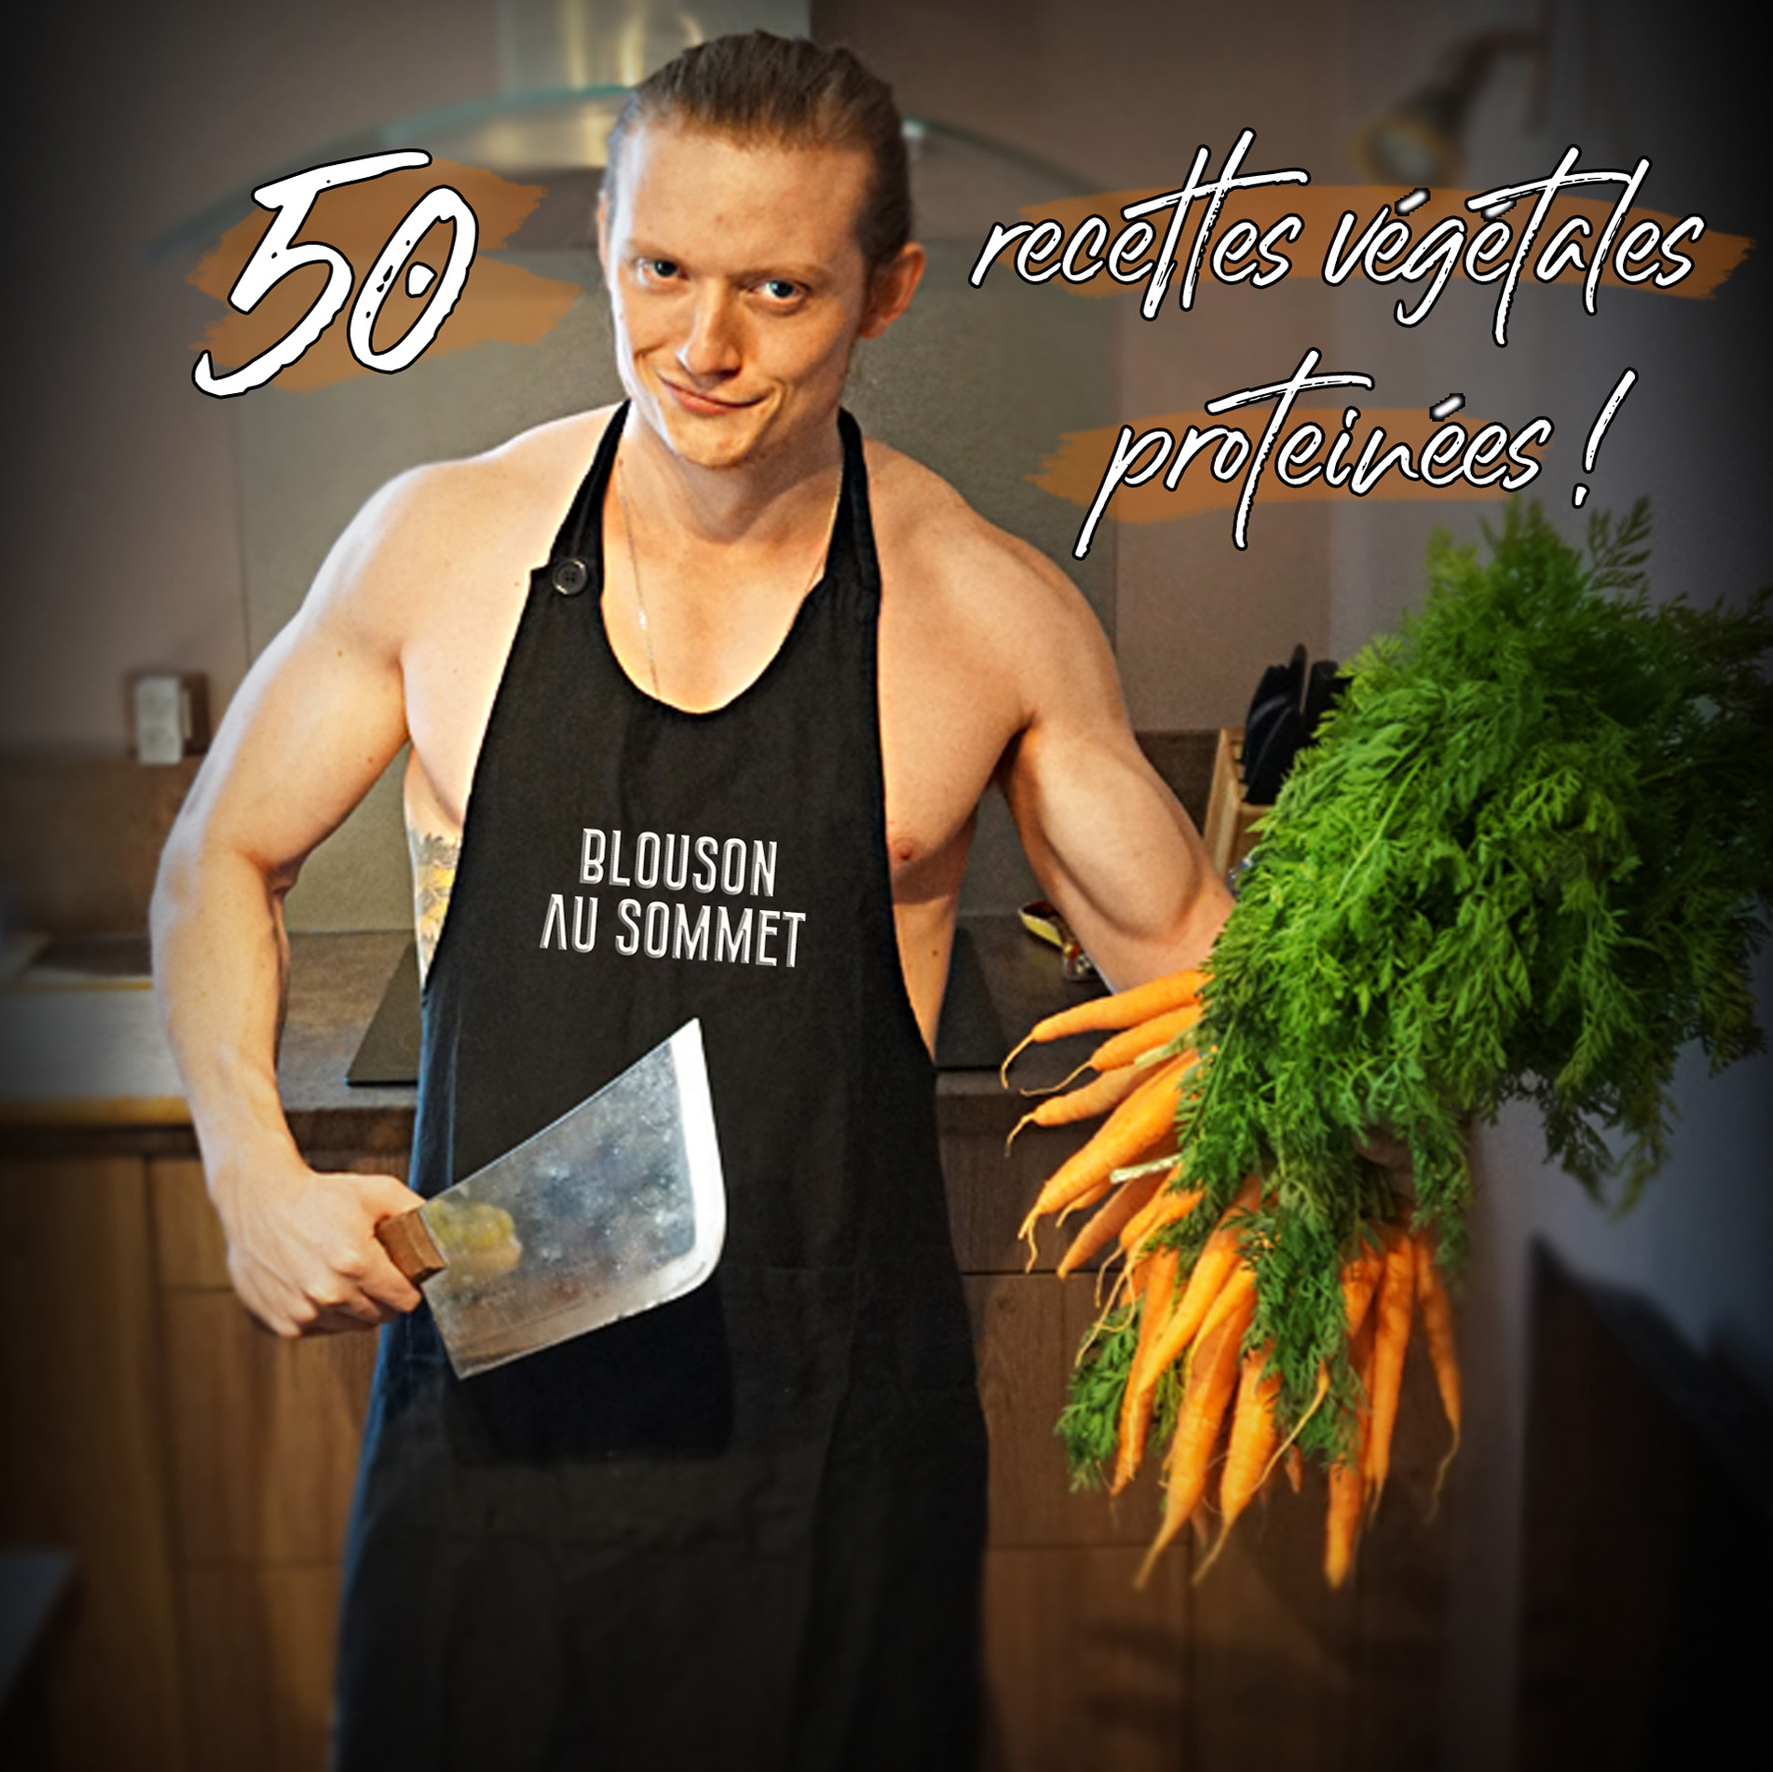 50 recettes végétales protéinées !